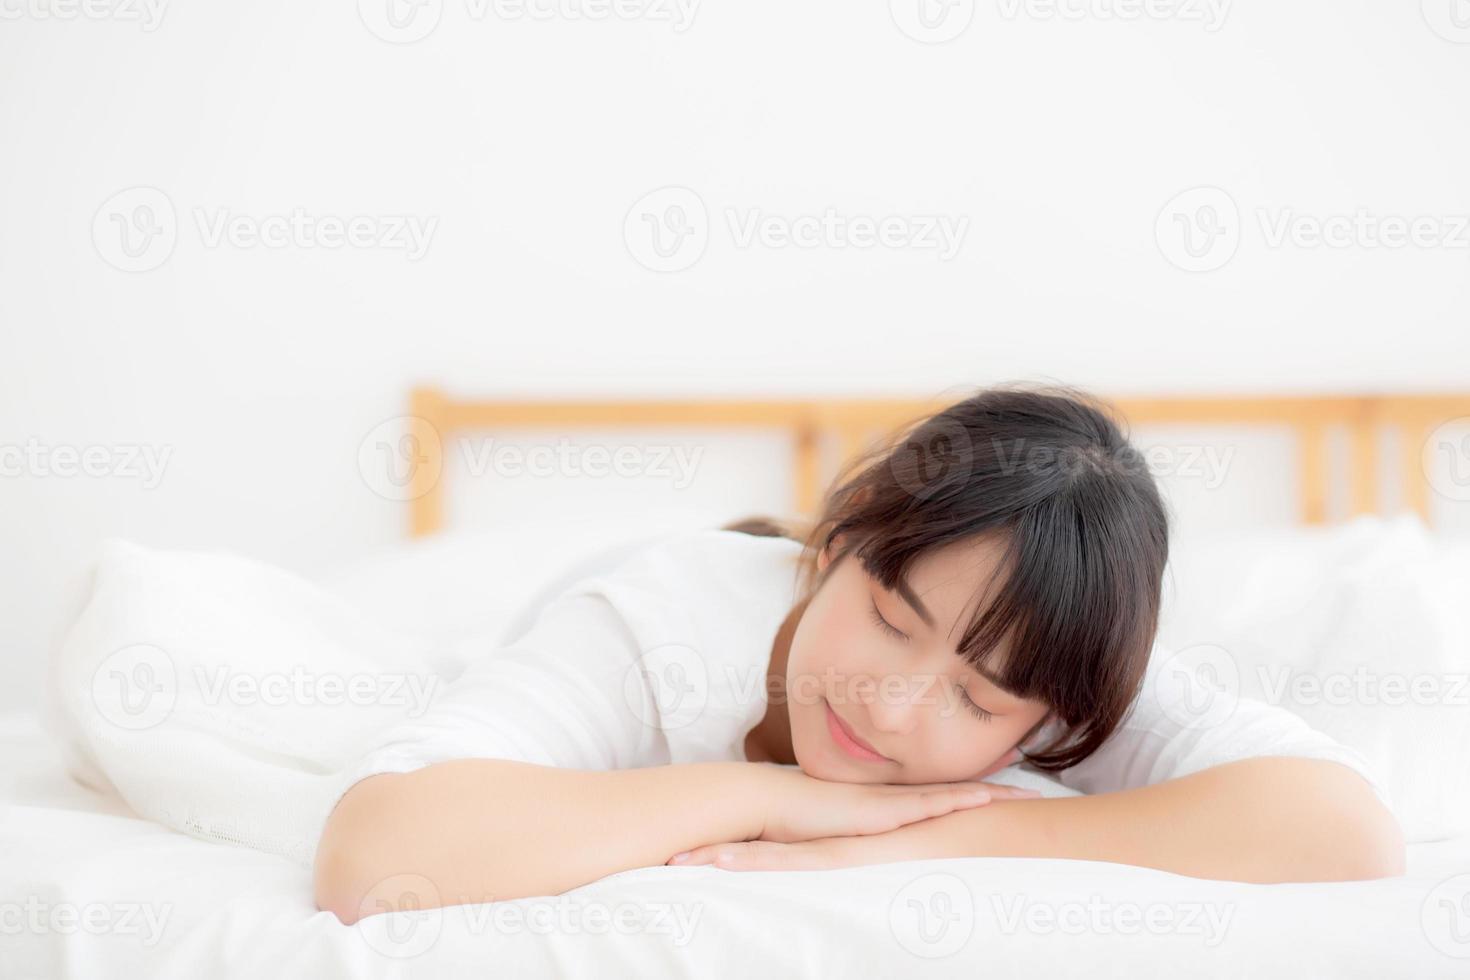 belle jeune femme asiatique fatiguée de dormir allongée dans son lit confortable et heureuse, fille avec détente et loisirs dans la chambre, concept de santé et de bien-être. photo